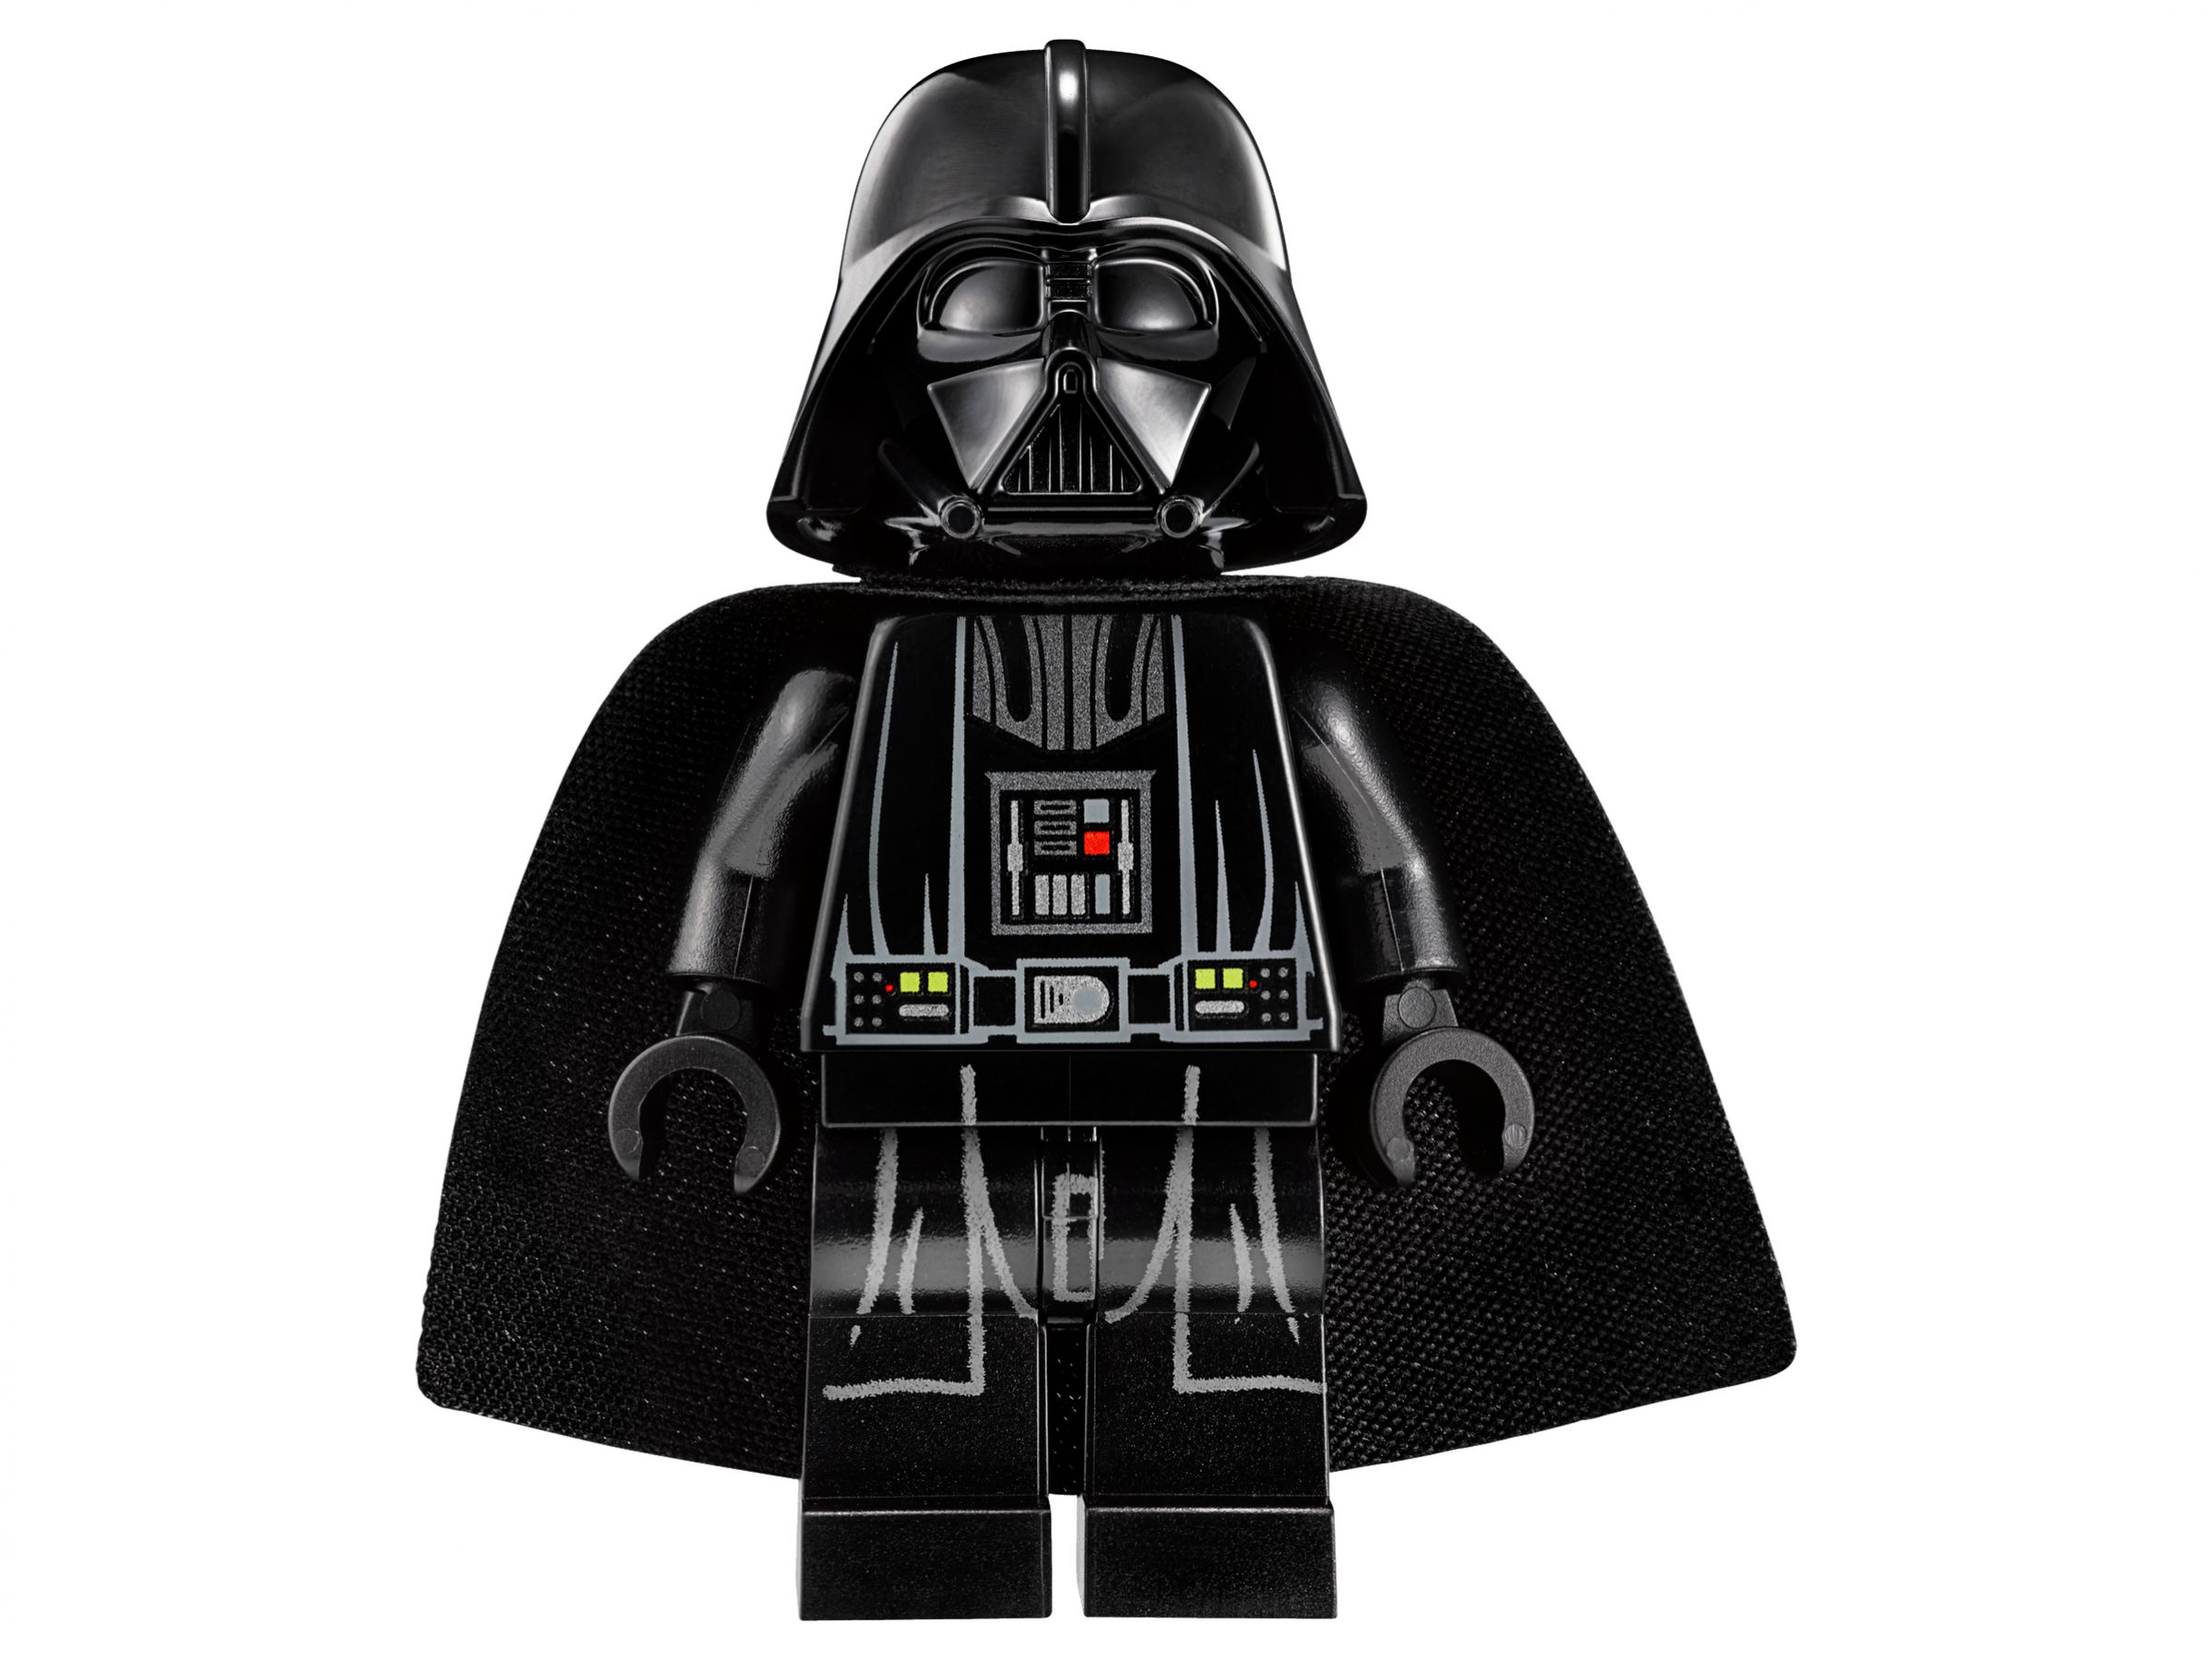 LEGO Star Wars 75150 Vader's TIE Advanced vs. A-Wing Starfighter LEGO_75150_alt9.jpg